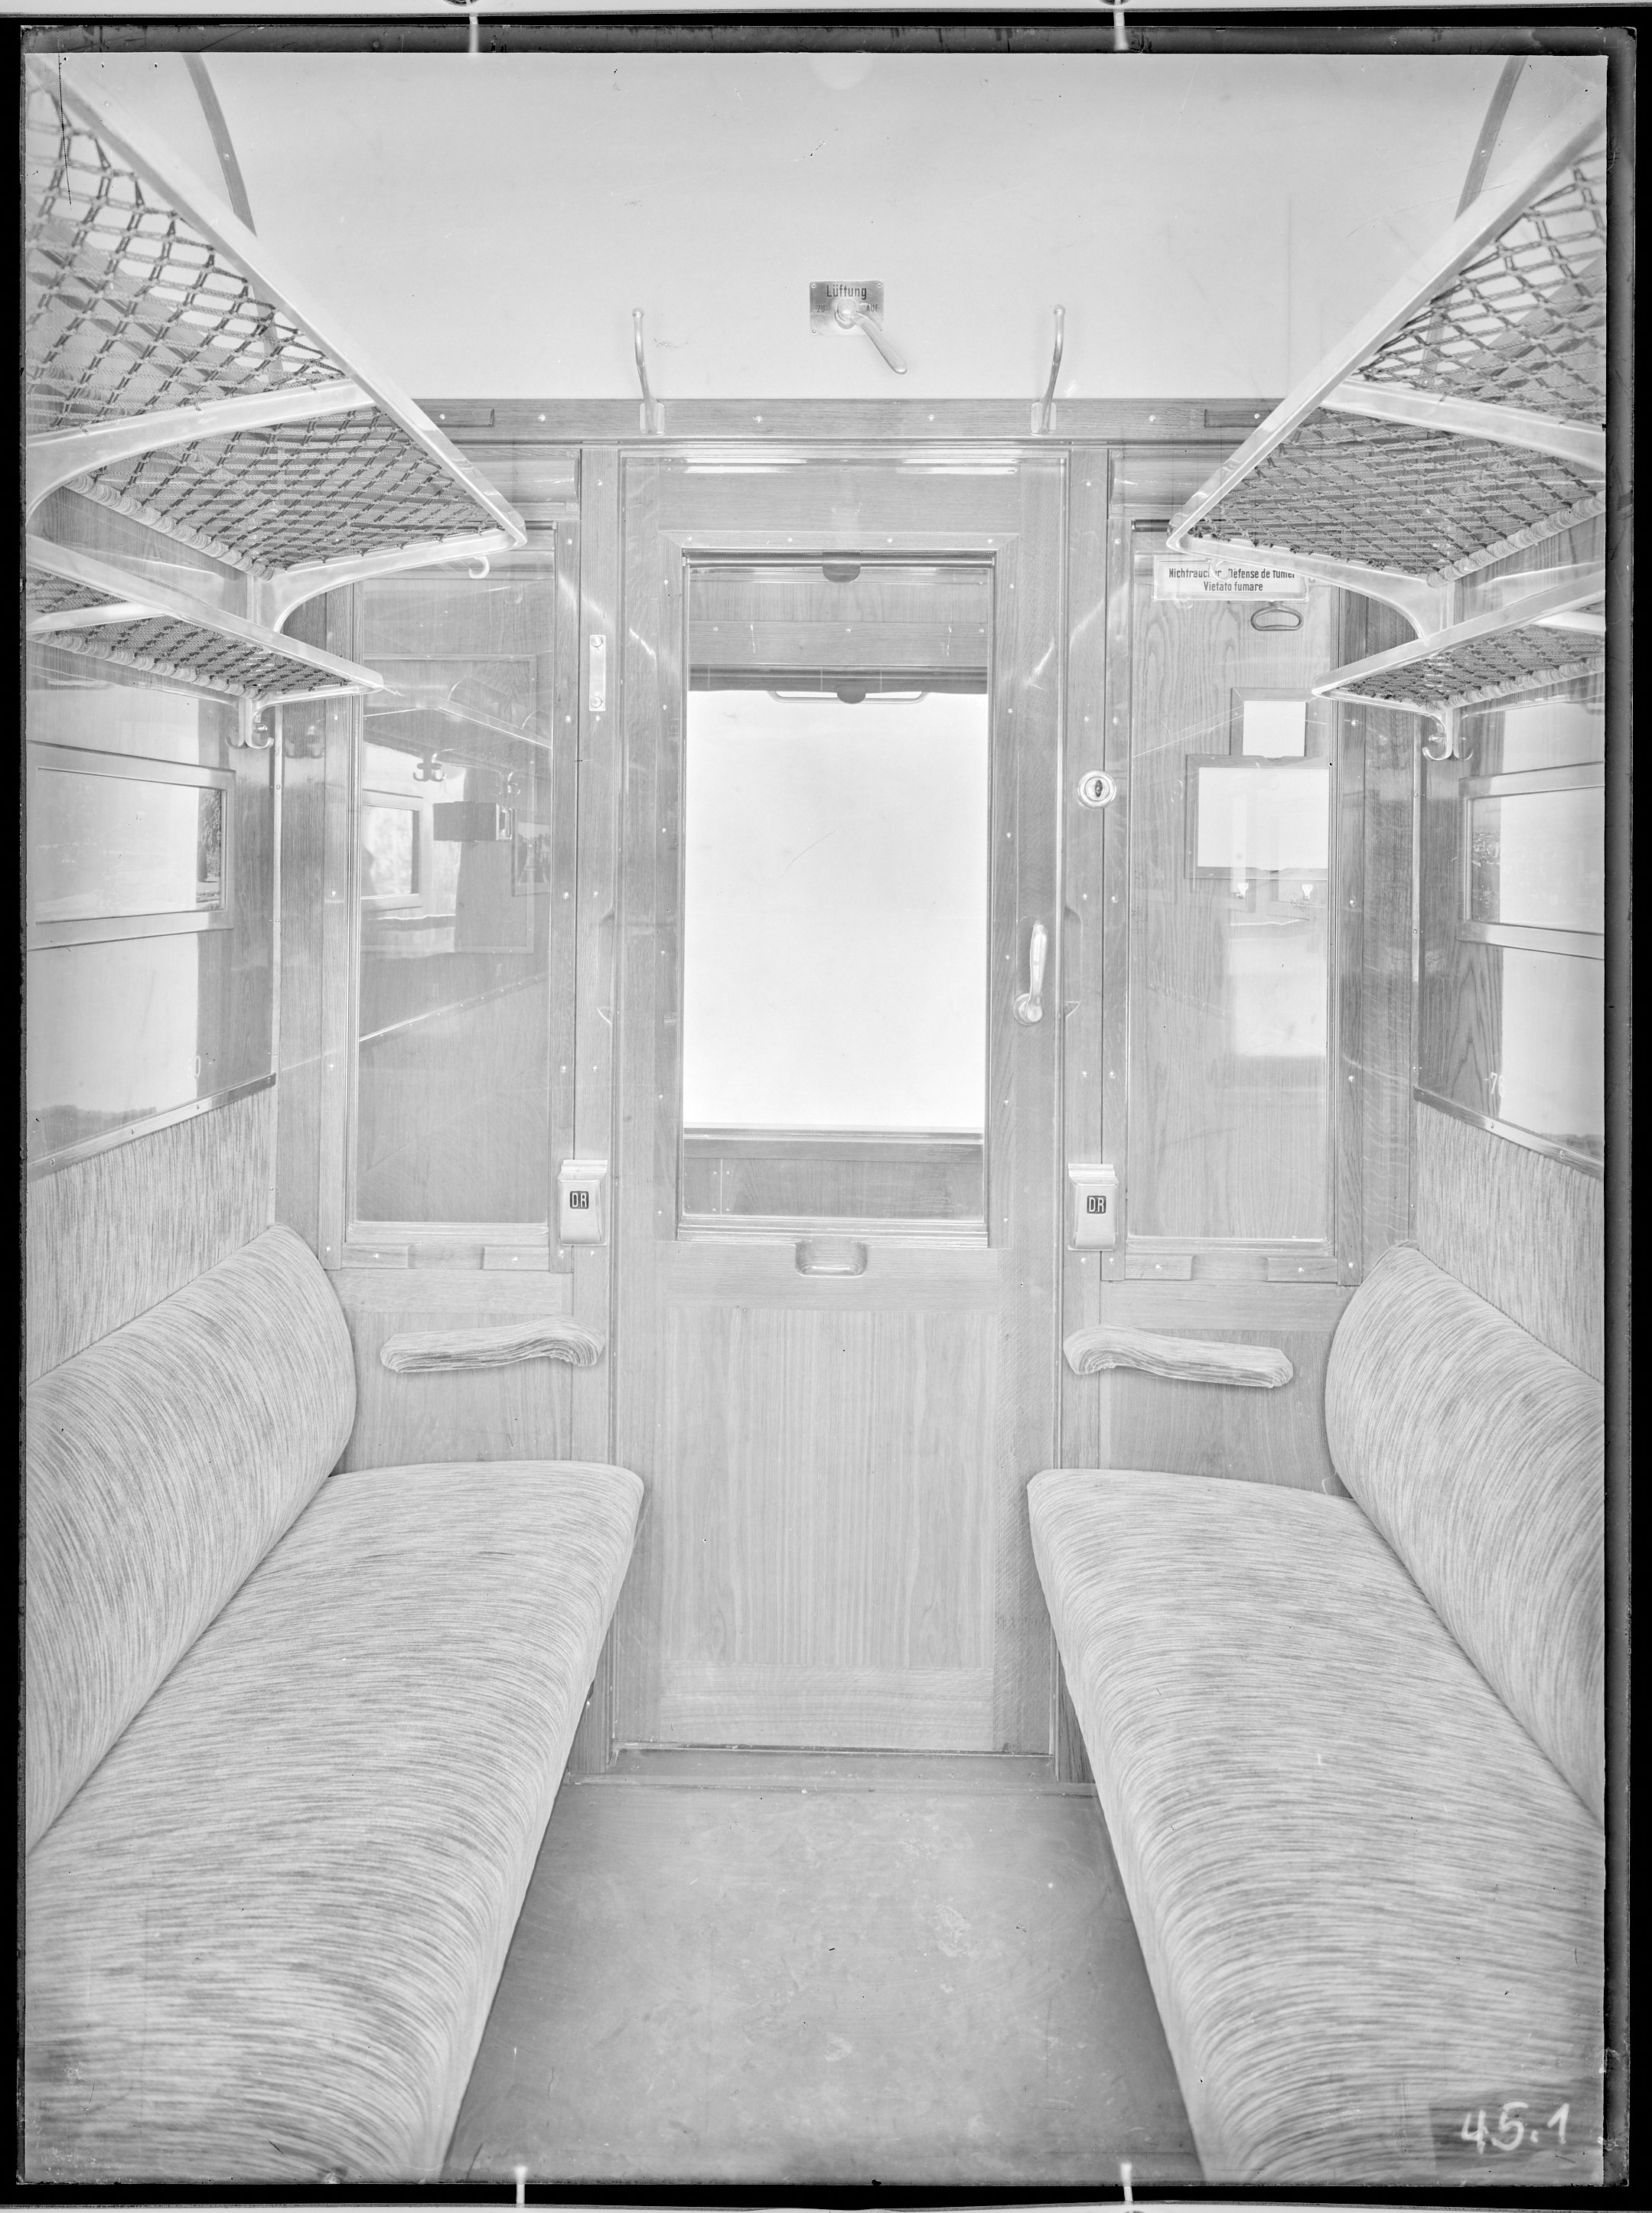 Fotografie: Abteil zweiter Klasse (Innenansicht), Blick zur Tür zum Seitengang, um 1930? (Verkehrsmuseum Dresden CC BY-NC-SA)